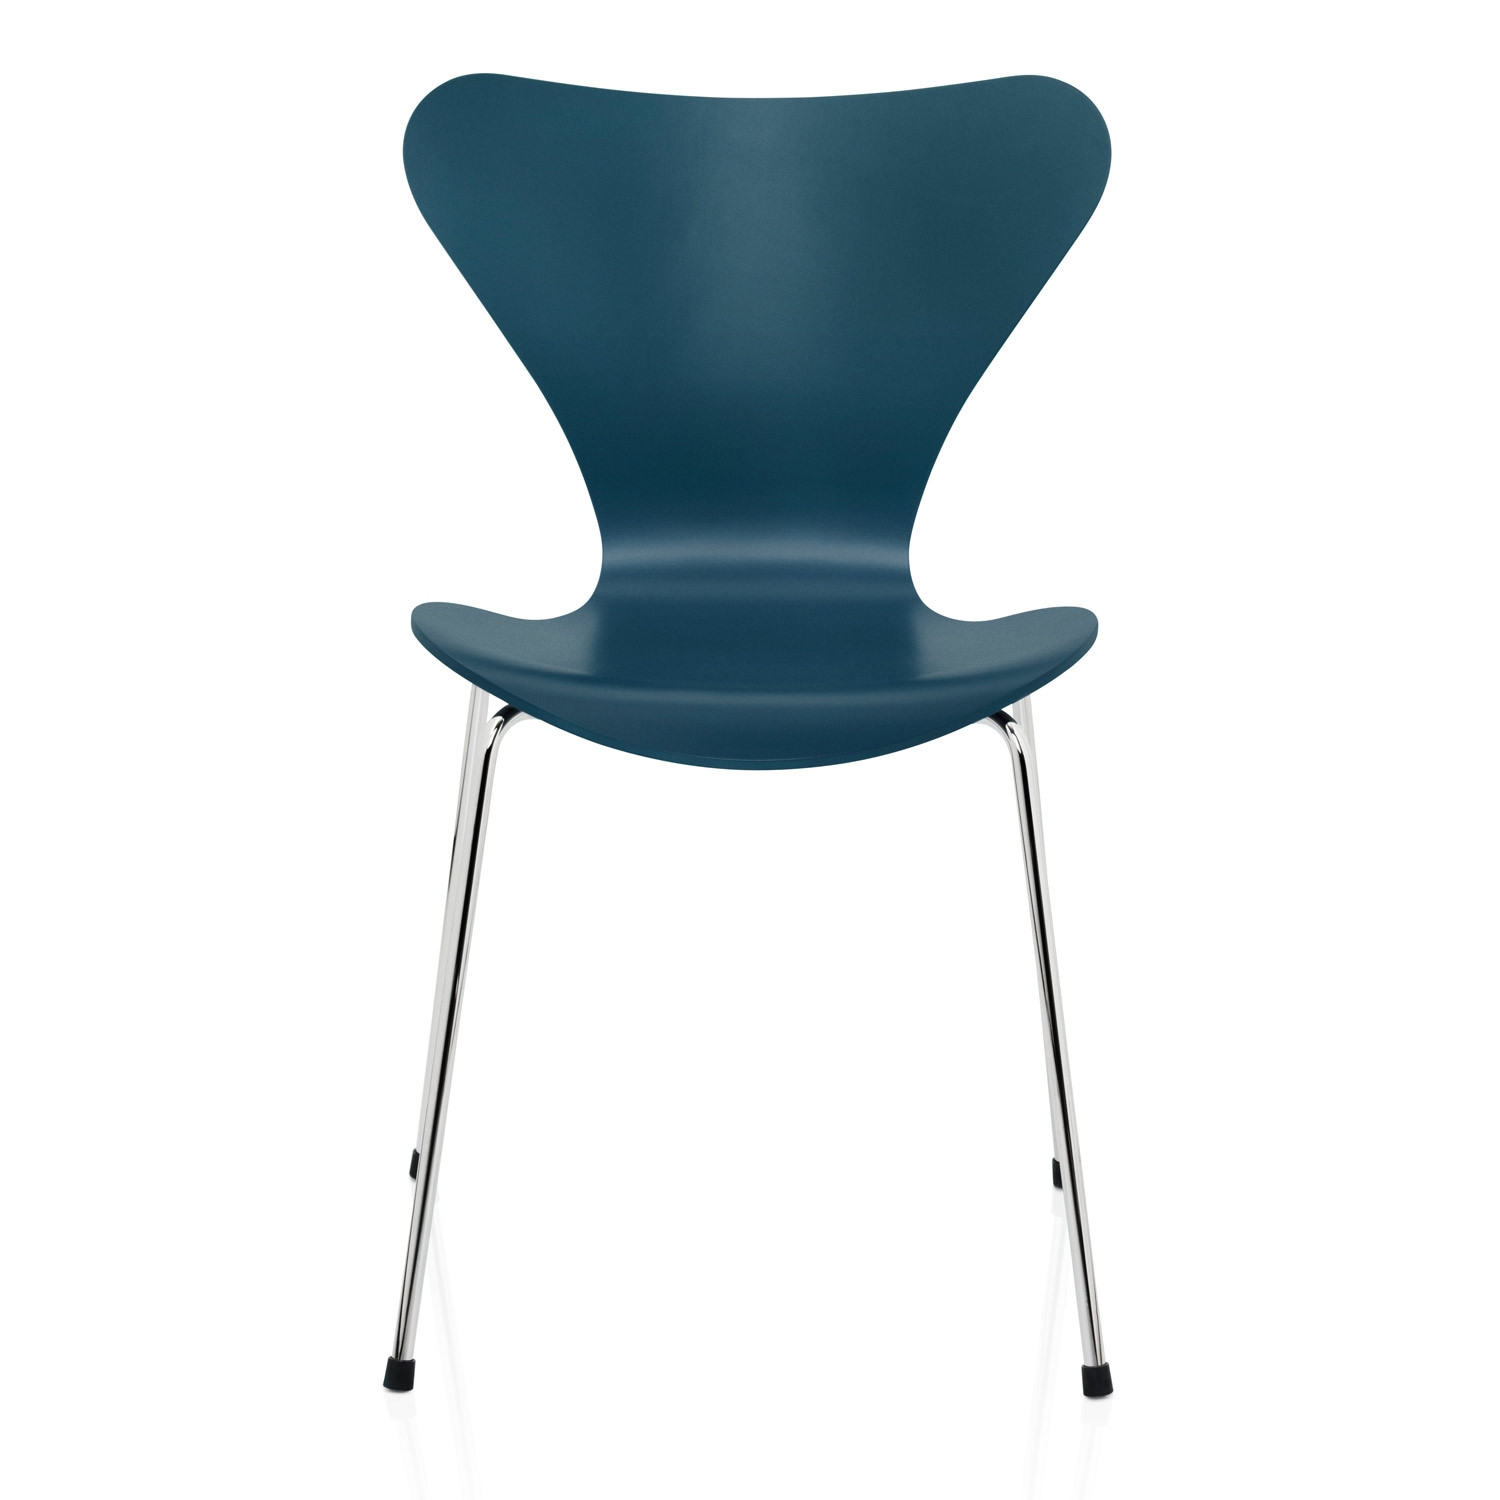 Series7 Chair